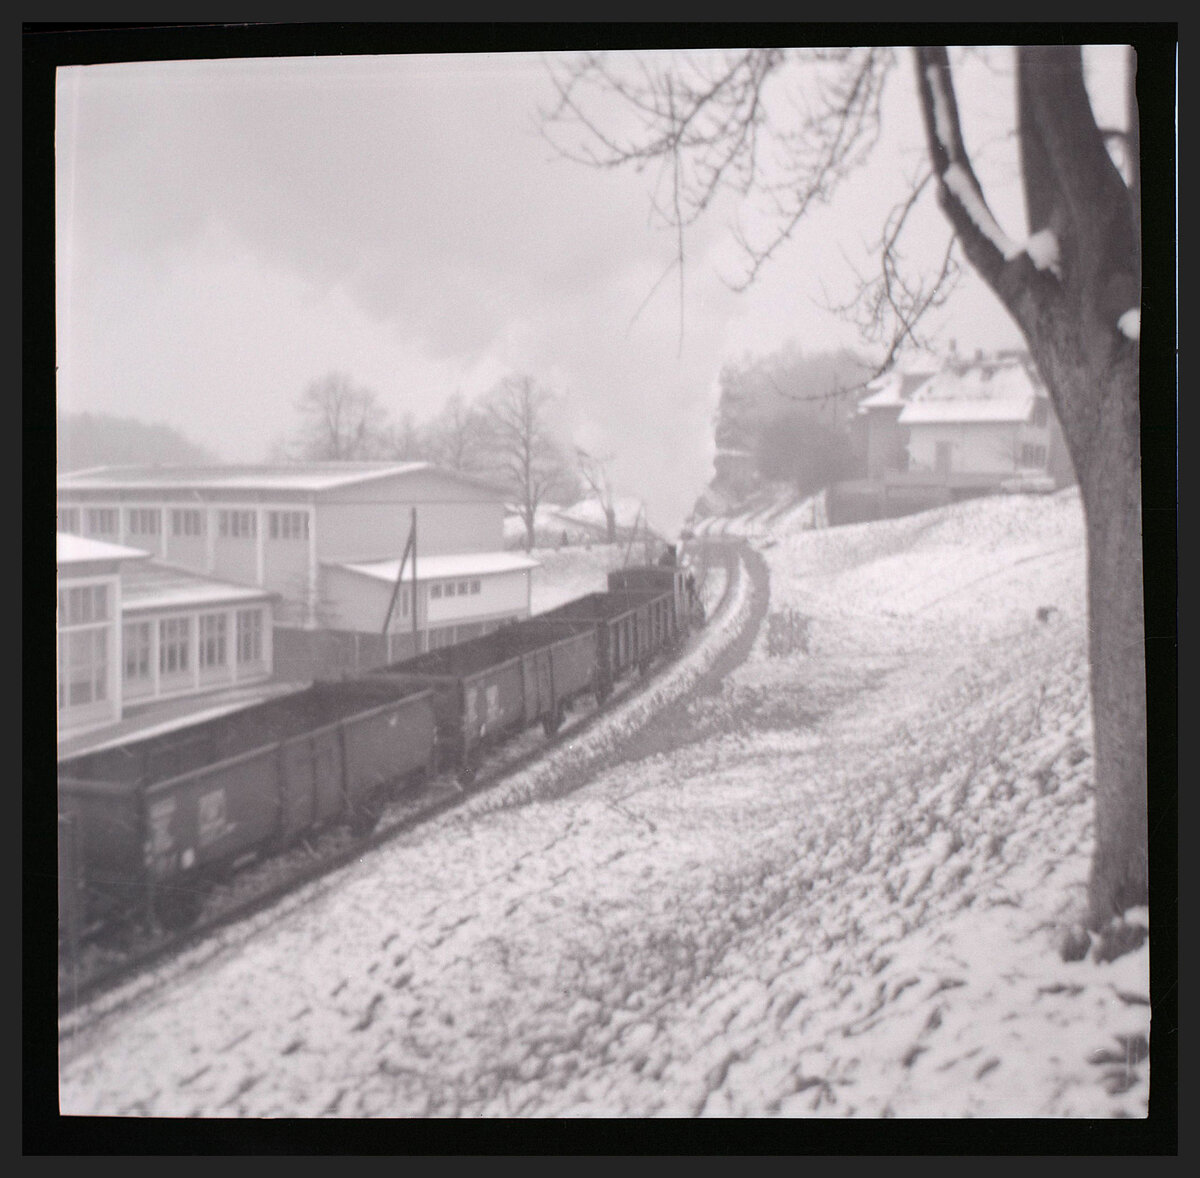 Die Gaswerkbahn Bern mit einem Dampfzug, der leere Kohlewagen nach Wabern hinaufzieht. Heute ist - bis auf ein kurzes Stück, wo die Anwohner ungestört bleiben wollen - die ganze alte Gaswerkbahn ein Veloweg. Dezember 1964 